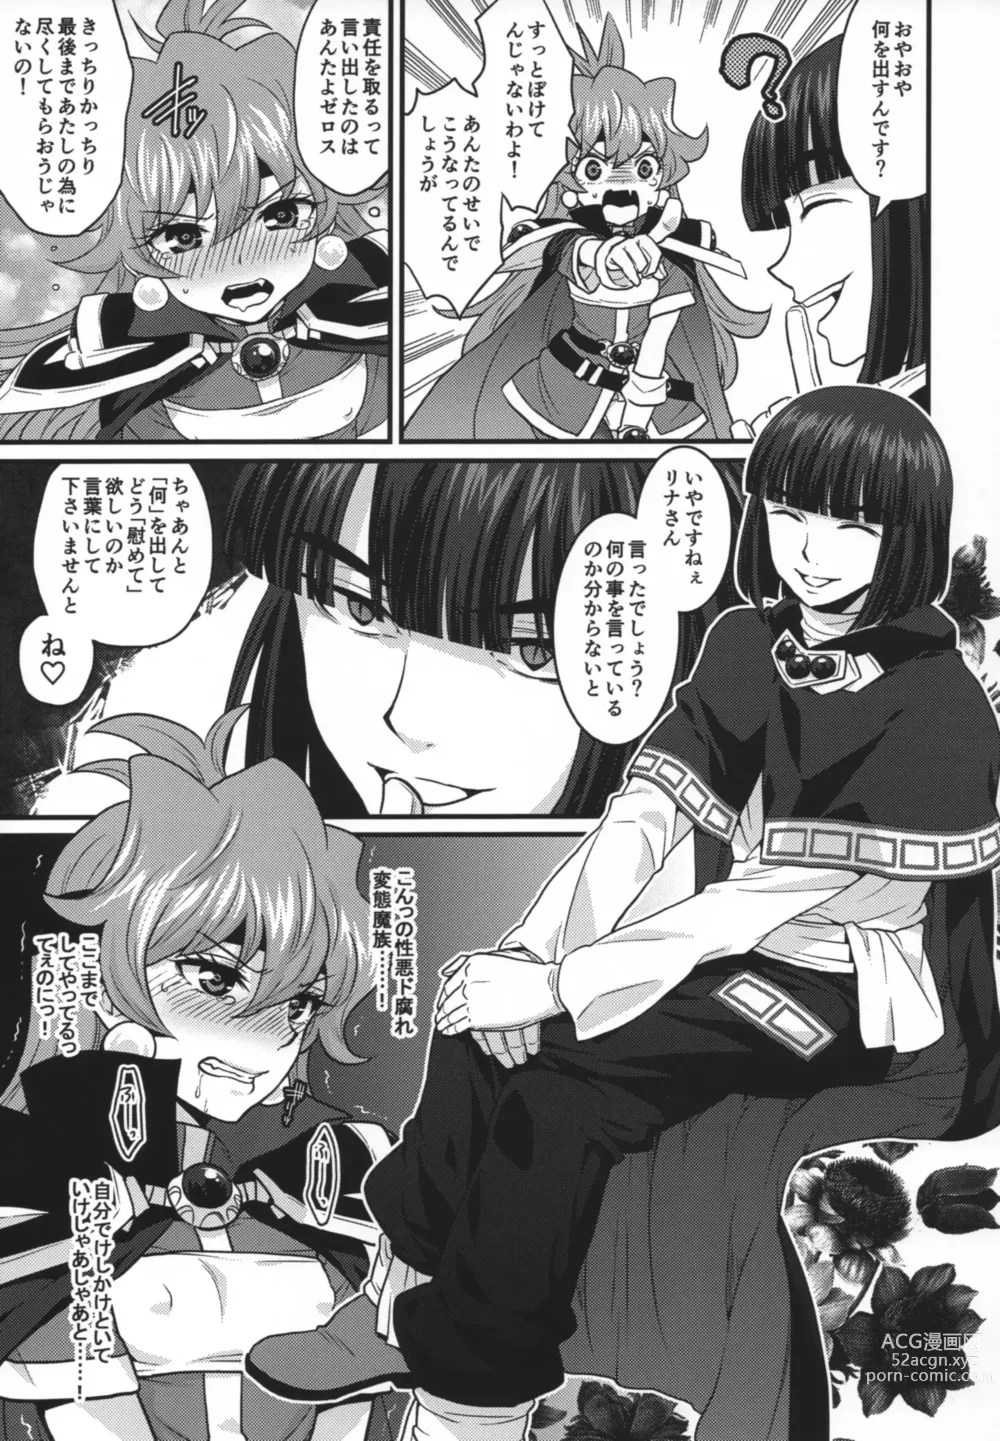 Page 6 of doujinshi Choro Sugi Desu Yo, Lina-san.